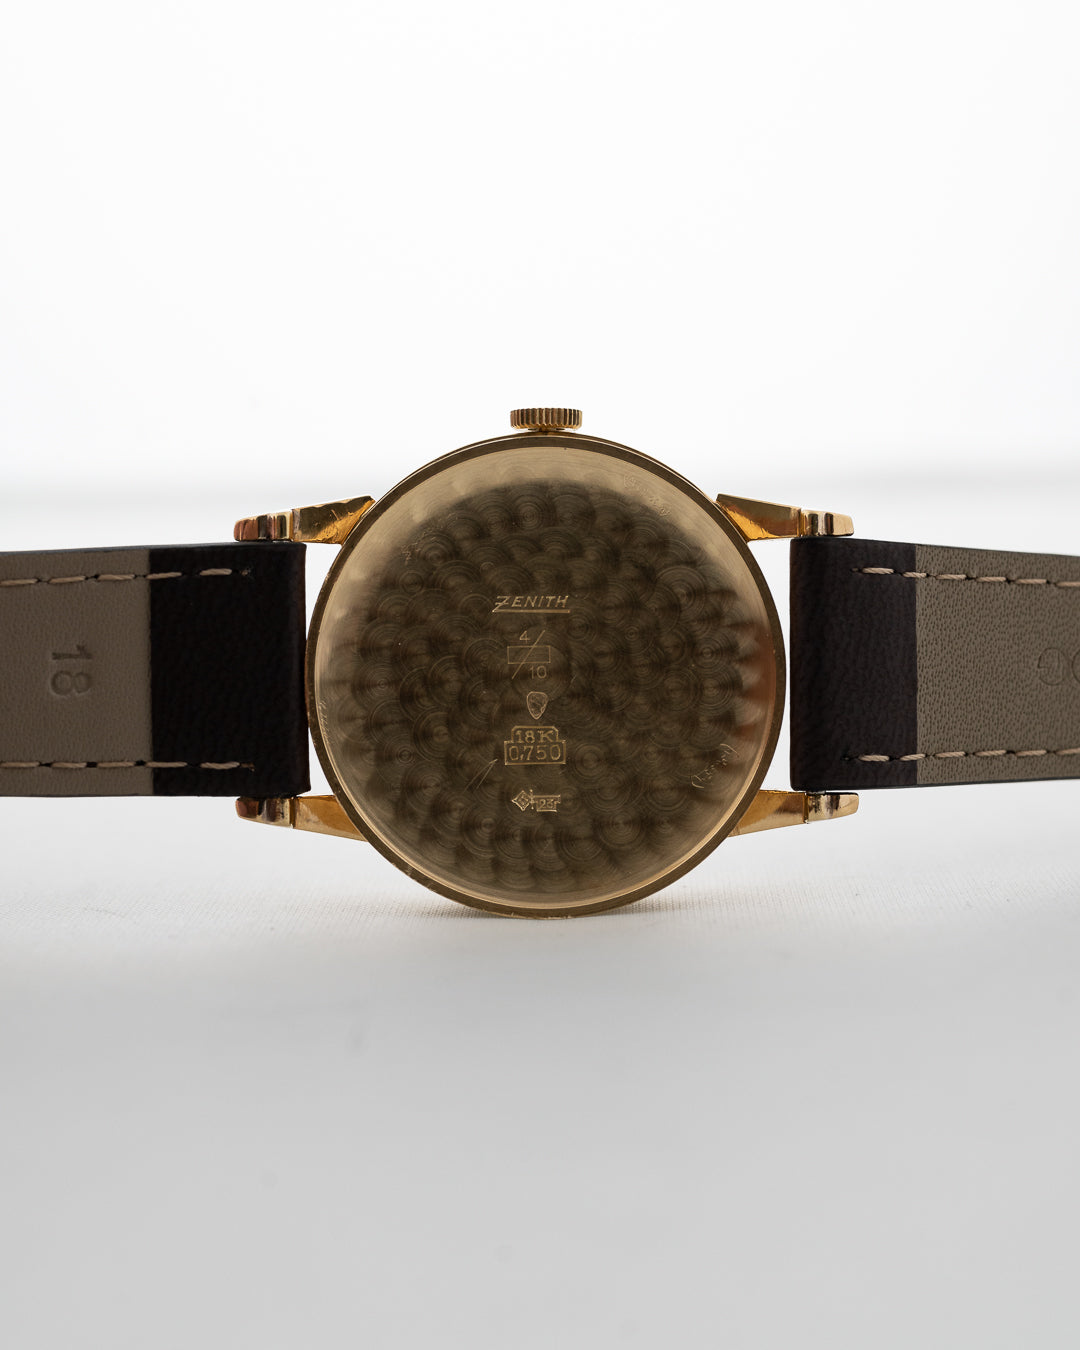 Zenith Chronometre 18k 1946